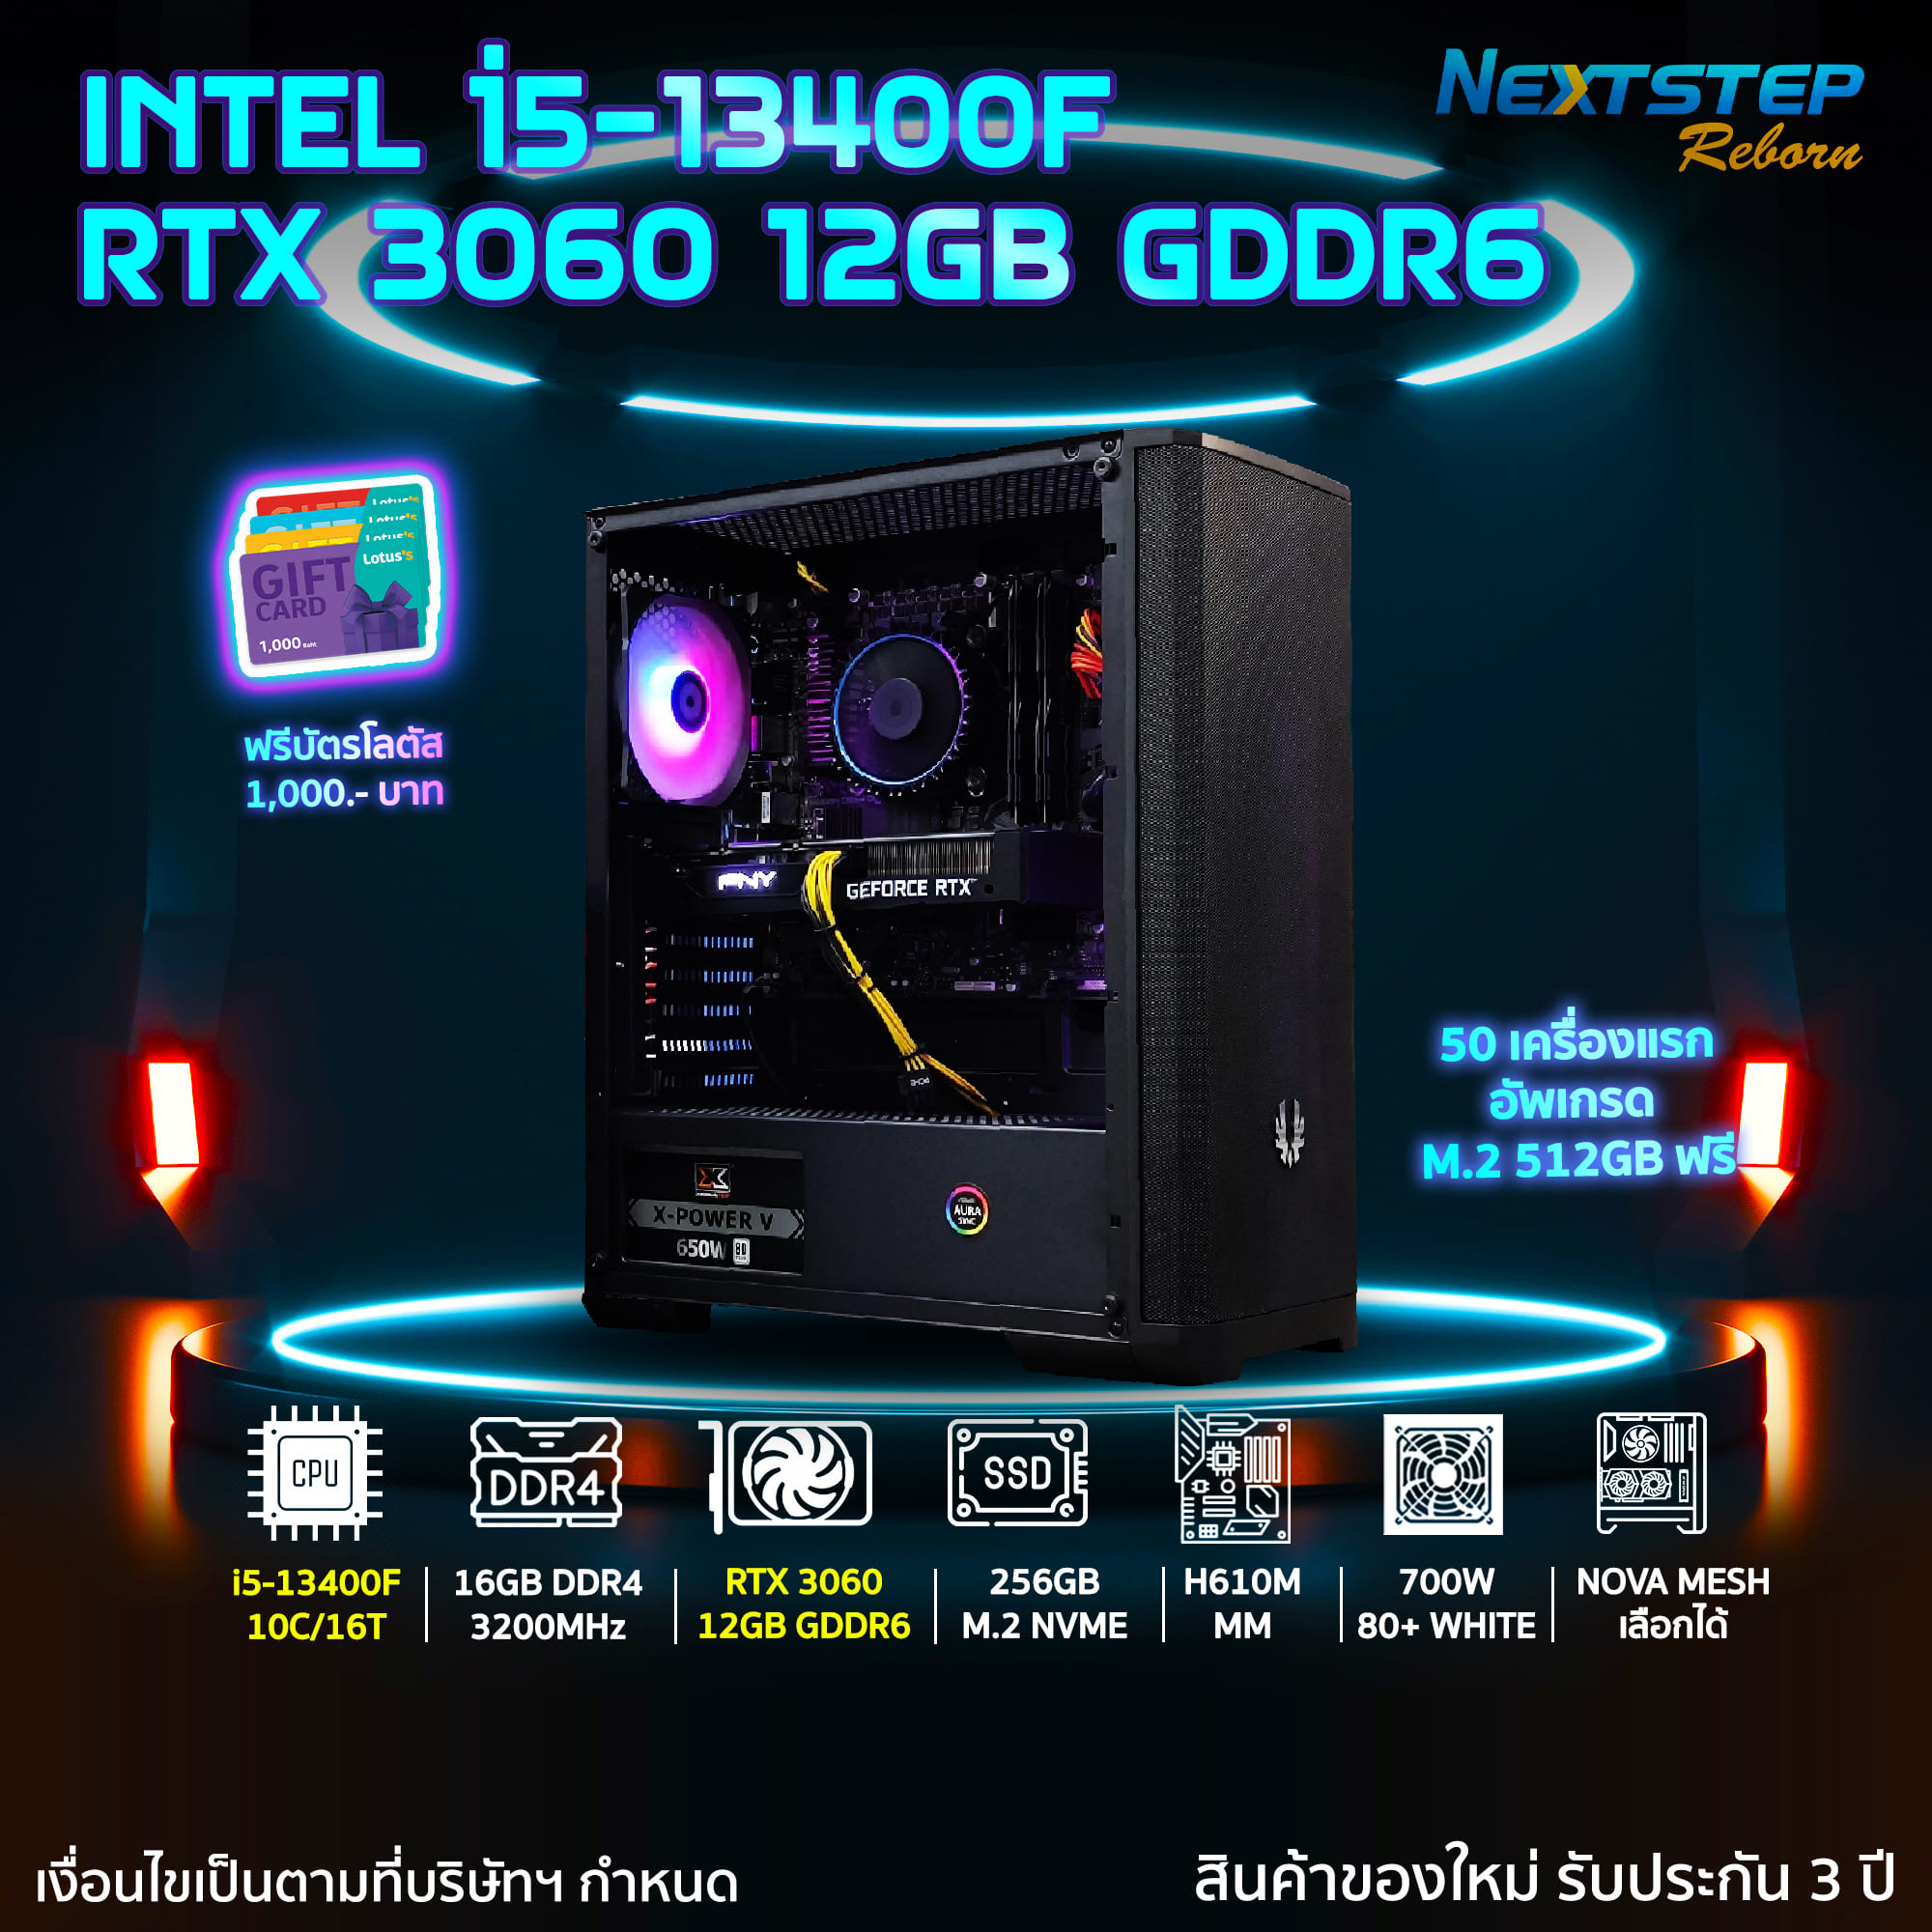 Intel Core i5-13400F 10C/16T 4.6GHz MAX Desktop Processor